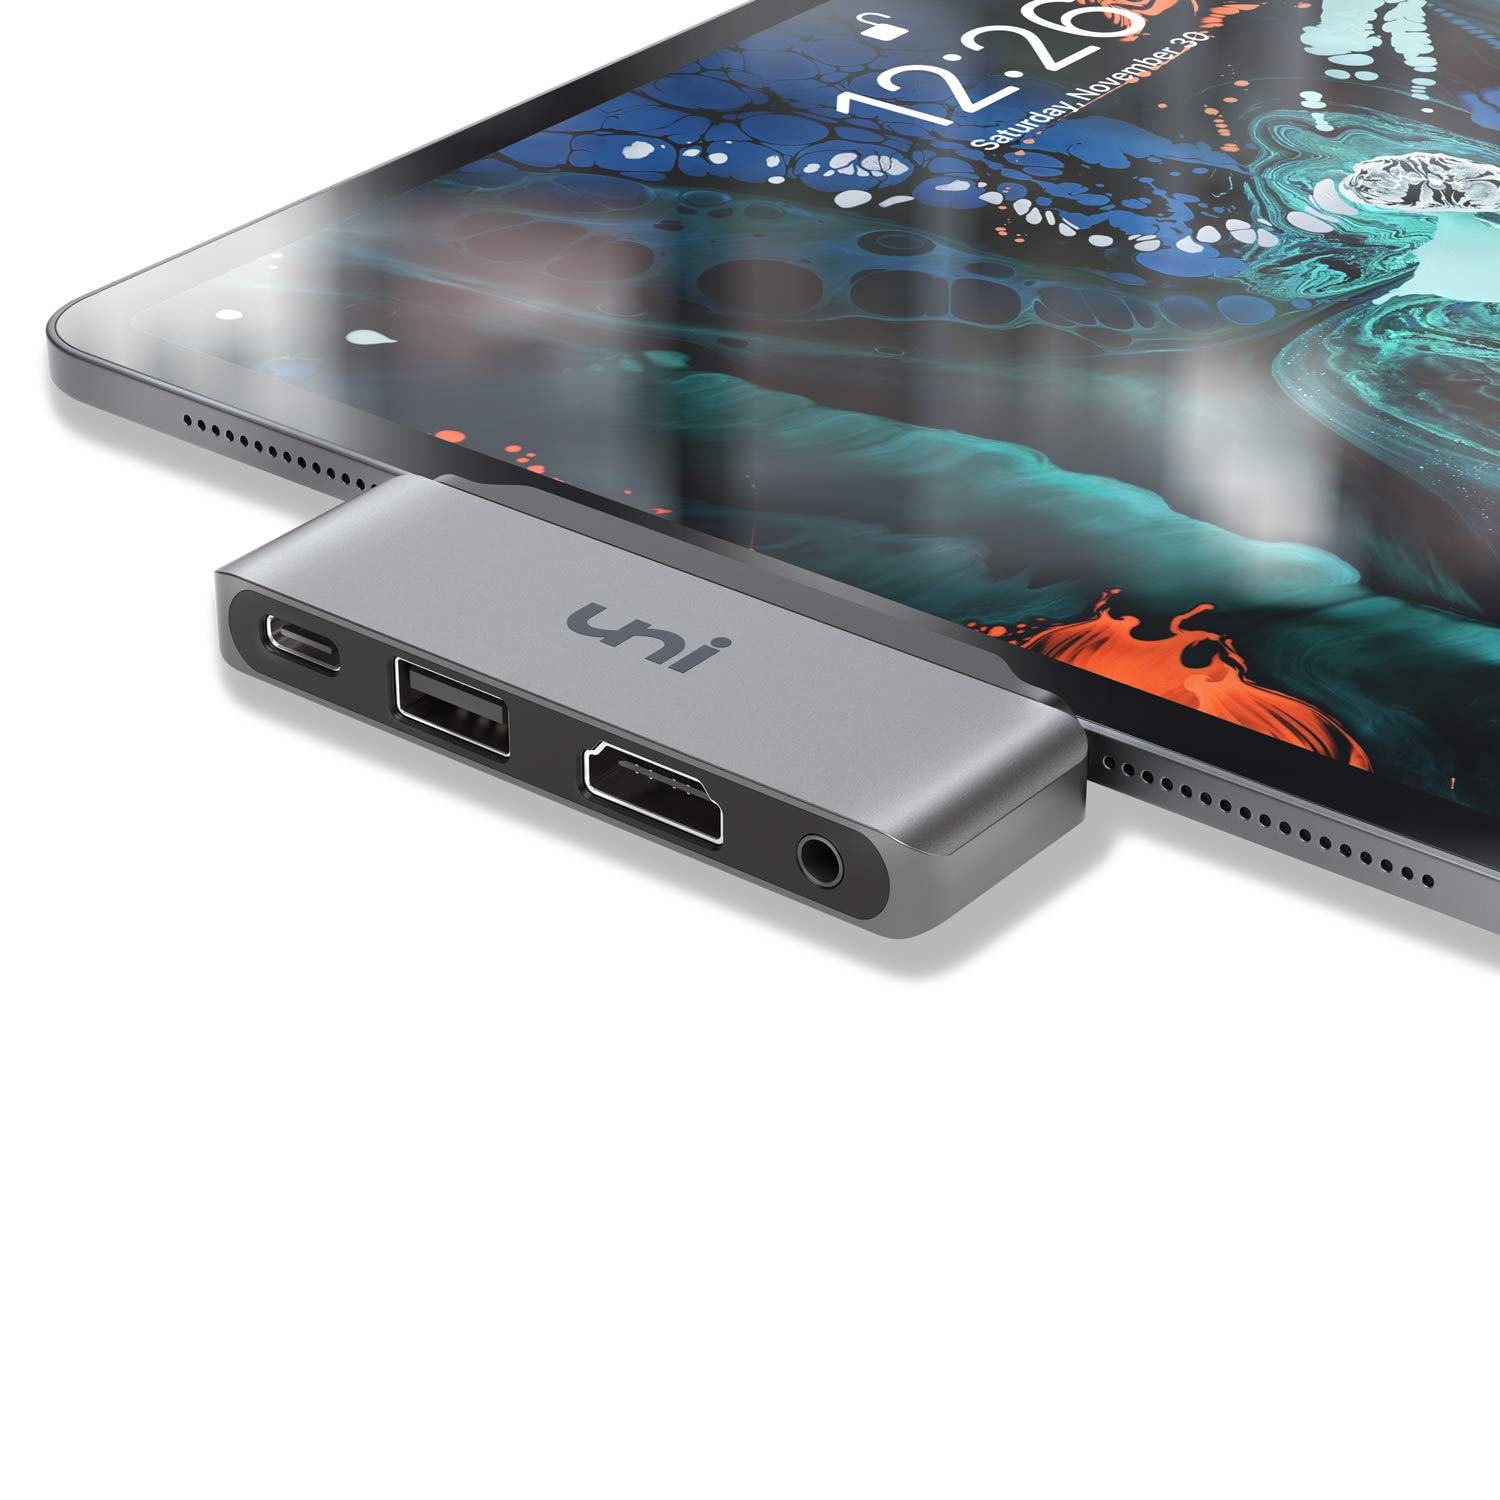 iPad Pro USB C Hub $9.99 at Amazon